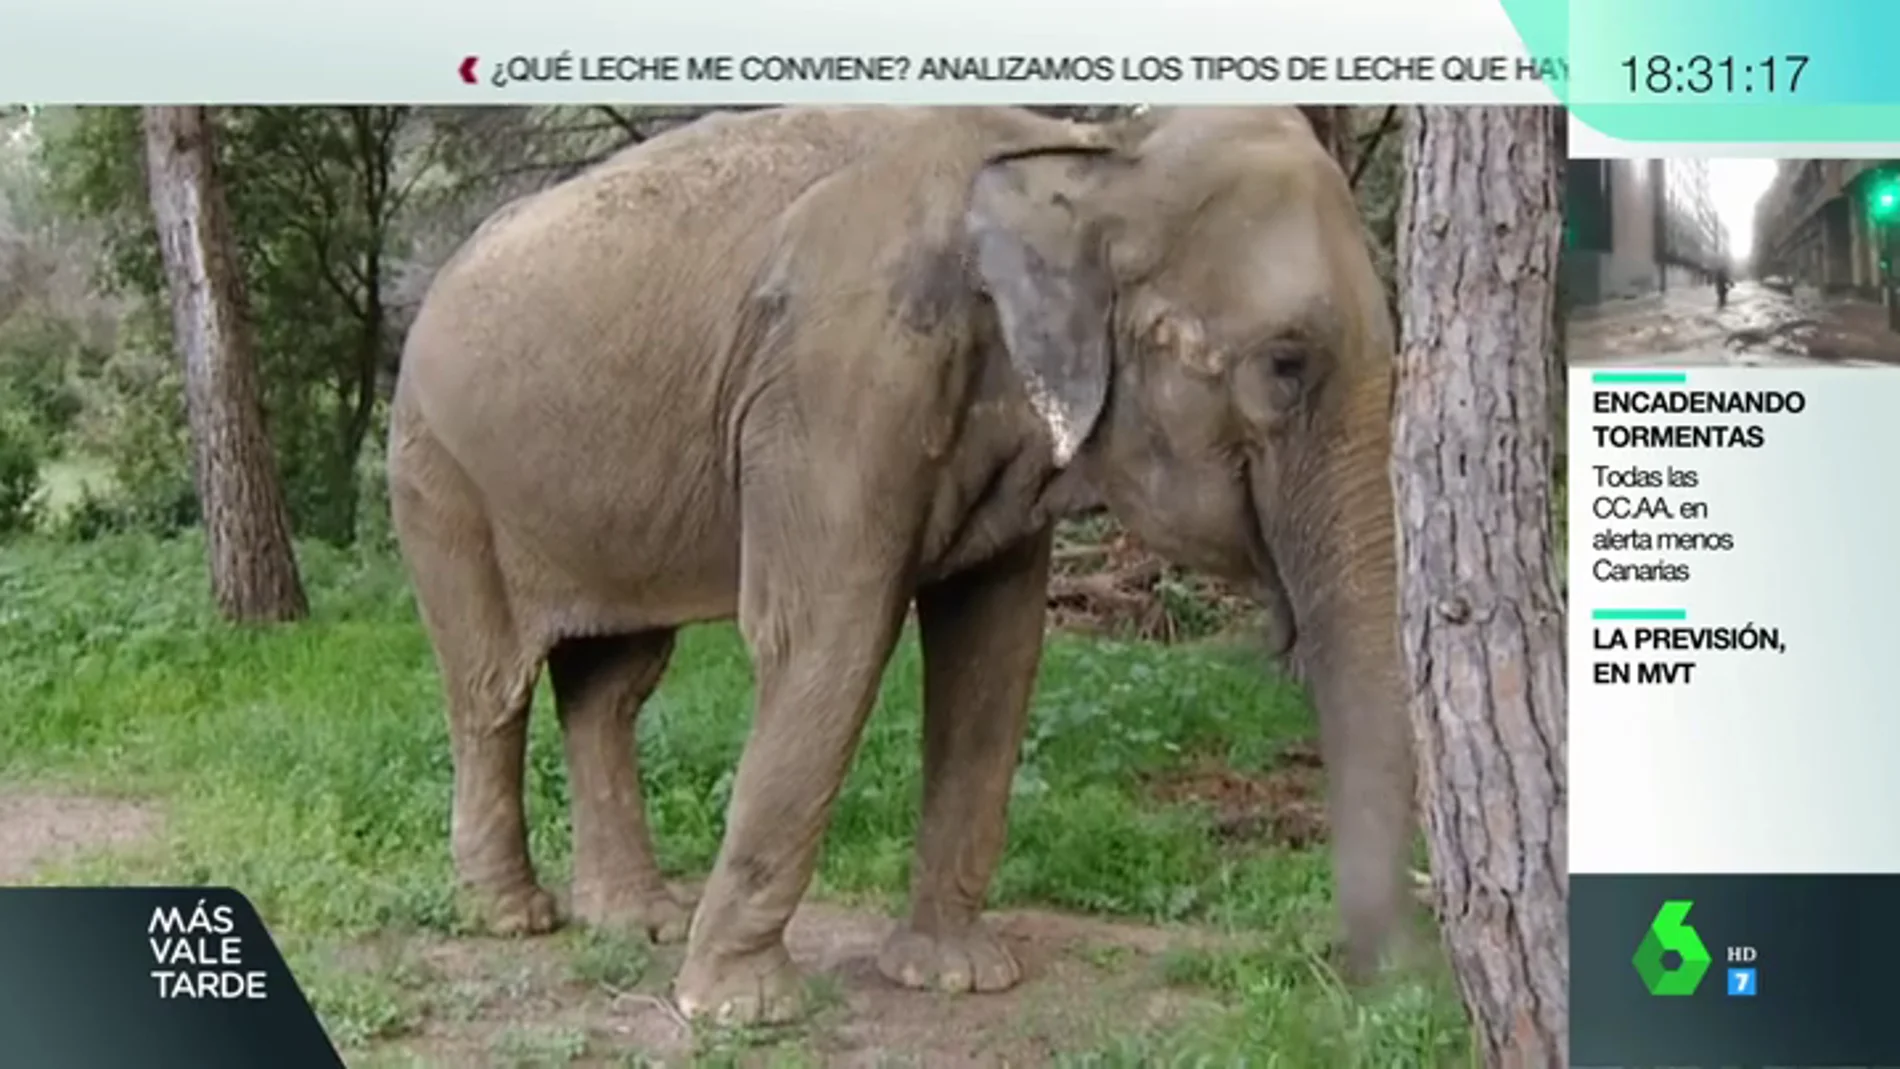 Tener una elefanta como animal de compañía: el caso de Dumba, que ha enfrentado a vecinos y animalistas